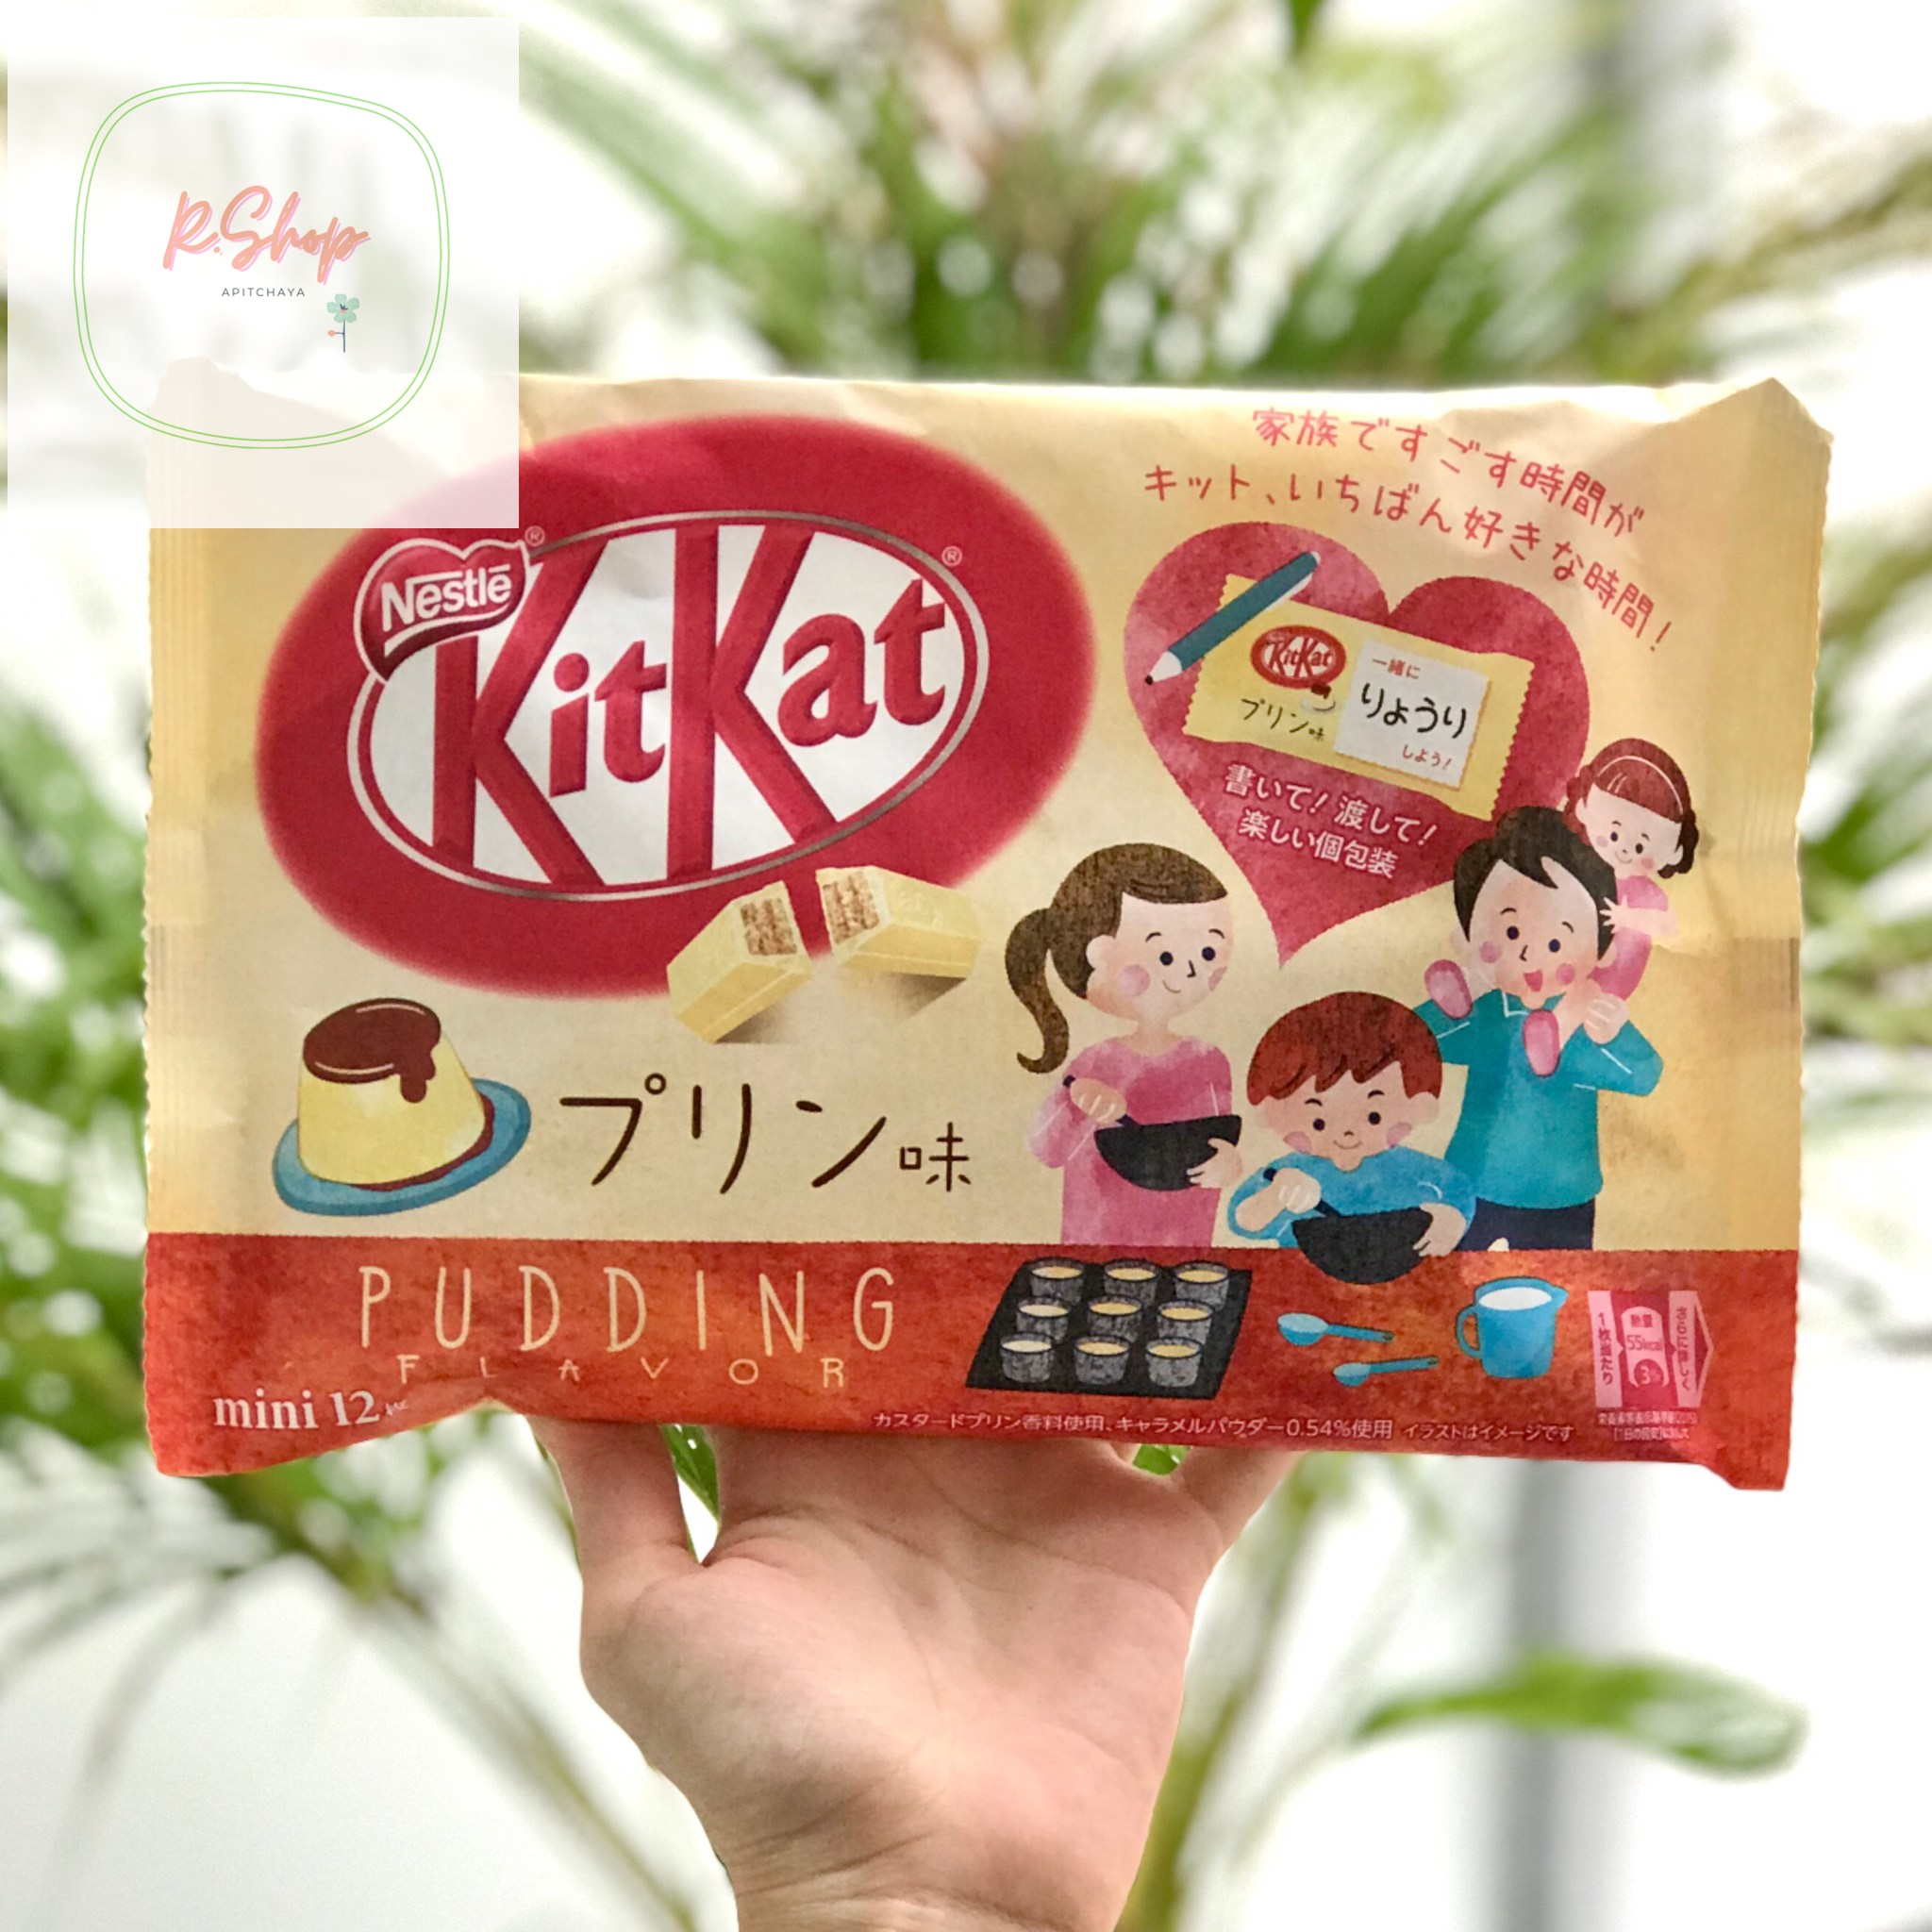 Kitkat Pudding คิทเเคท ขนม ขนมขบเคี้ยว ขนมทอดกรอบ ขนมอบกรอบ ขนมอร่อยๆ ขนมต่างประเทศ ขนมนำเข้า ช็อคโกแล็ต ขนมญี่ปุ่น ขนมเกาหลี